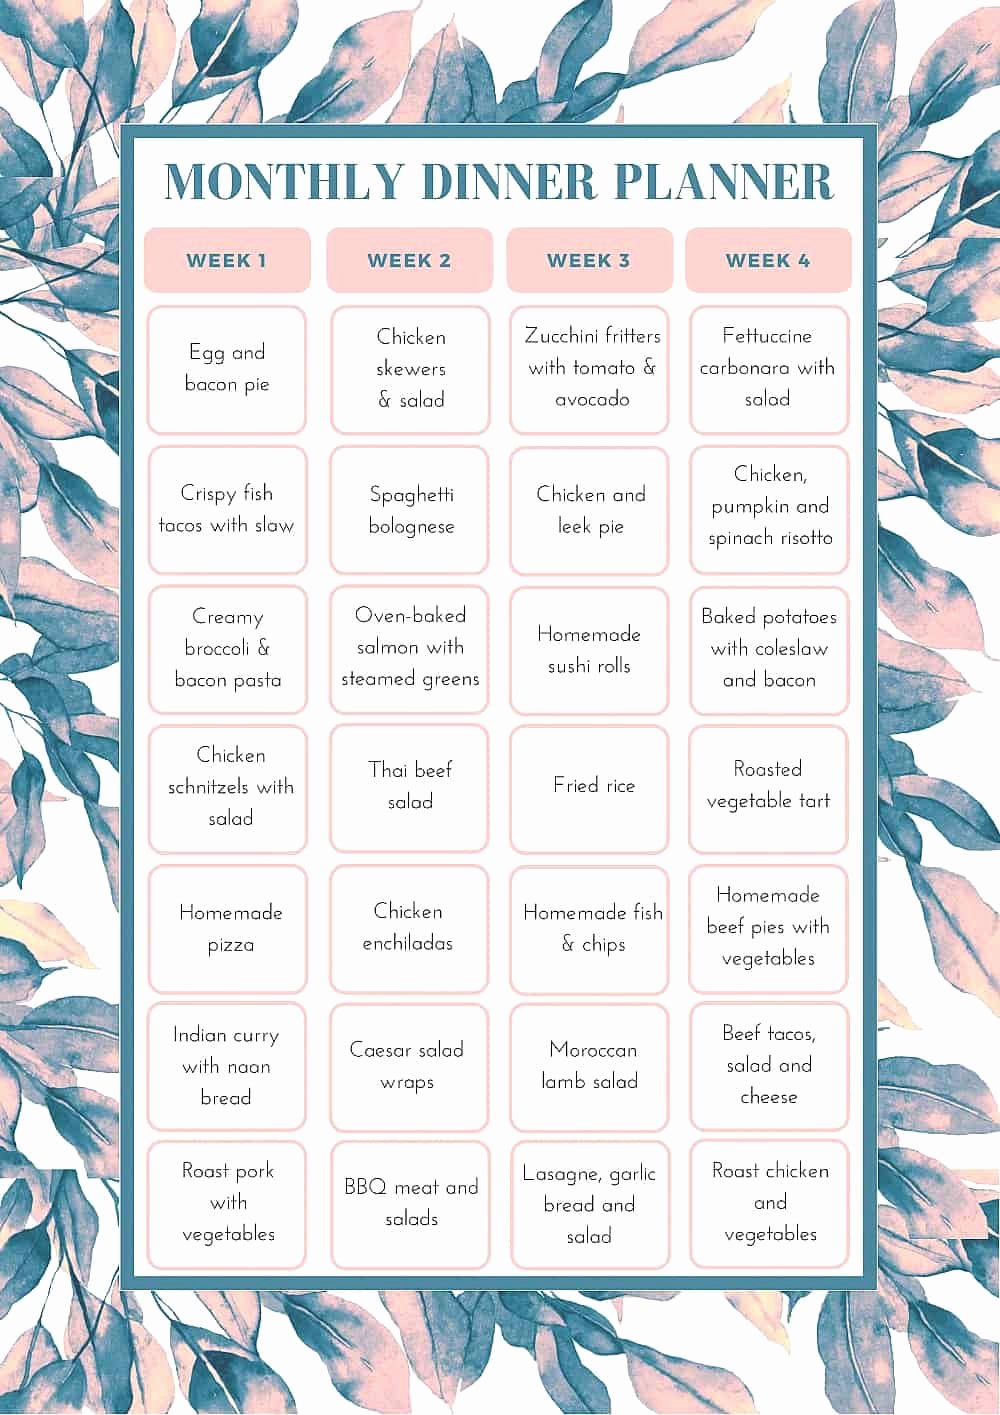 Weekly Meal Planning Template Elegant Free Monthly Meal Planning Template Bake Play Smile